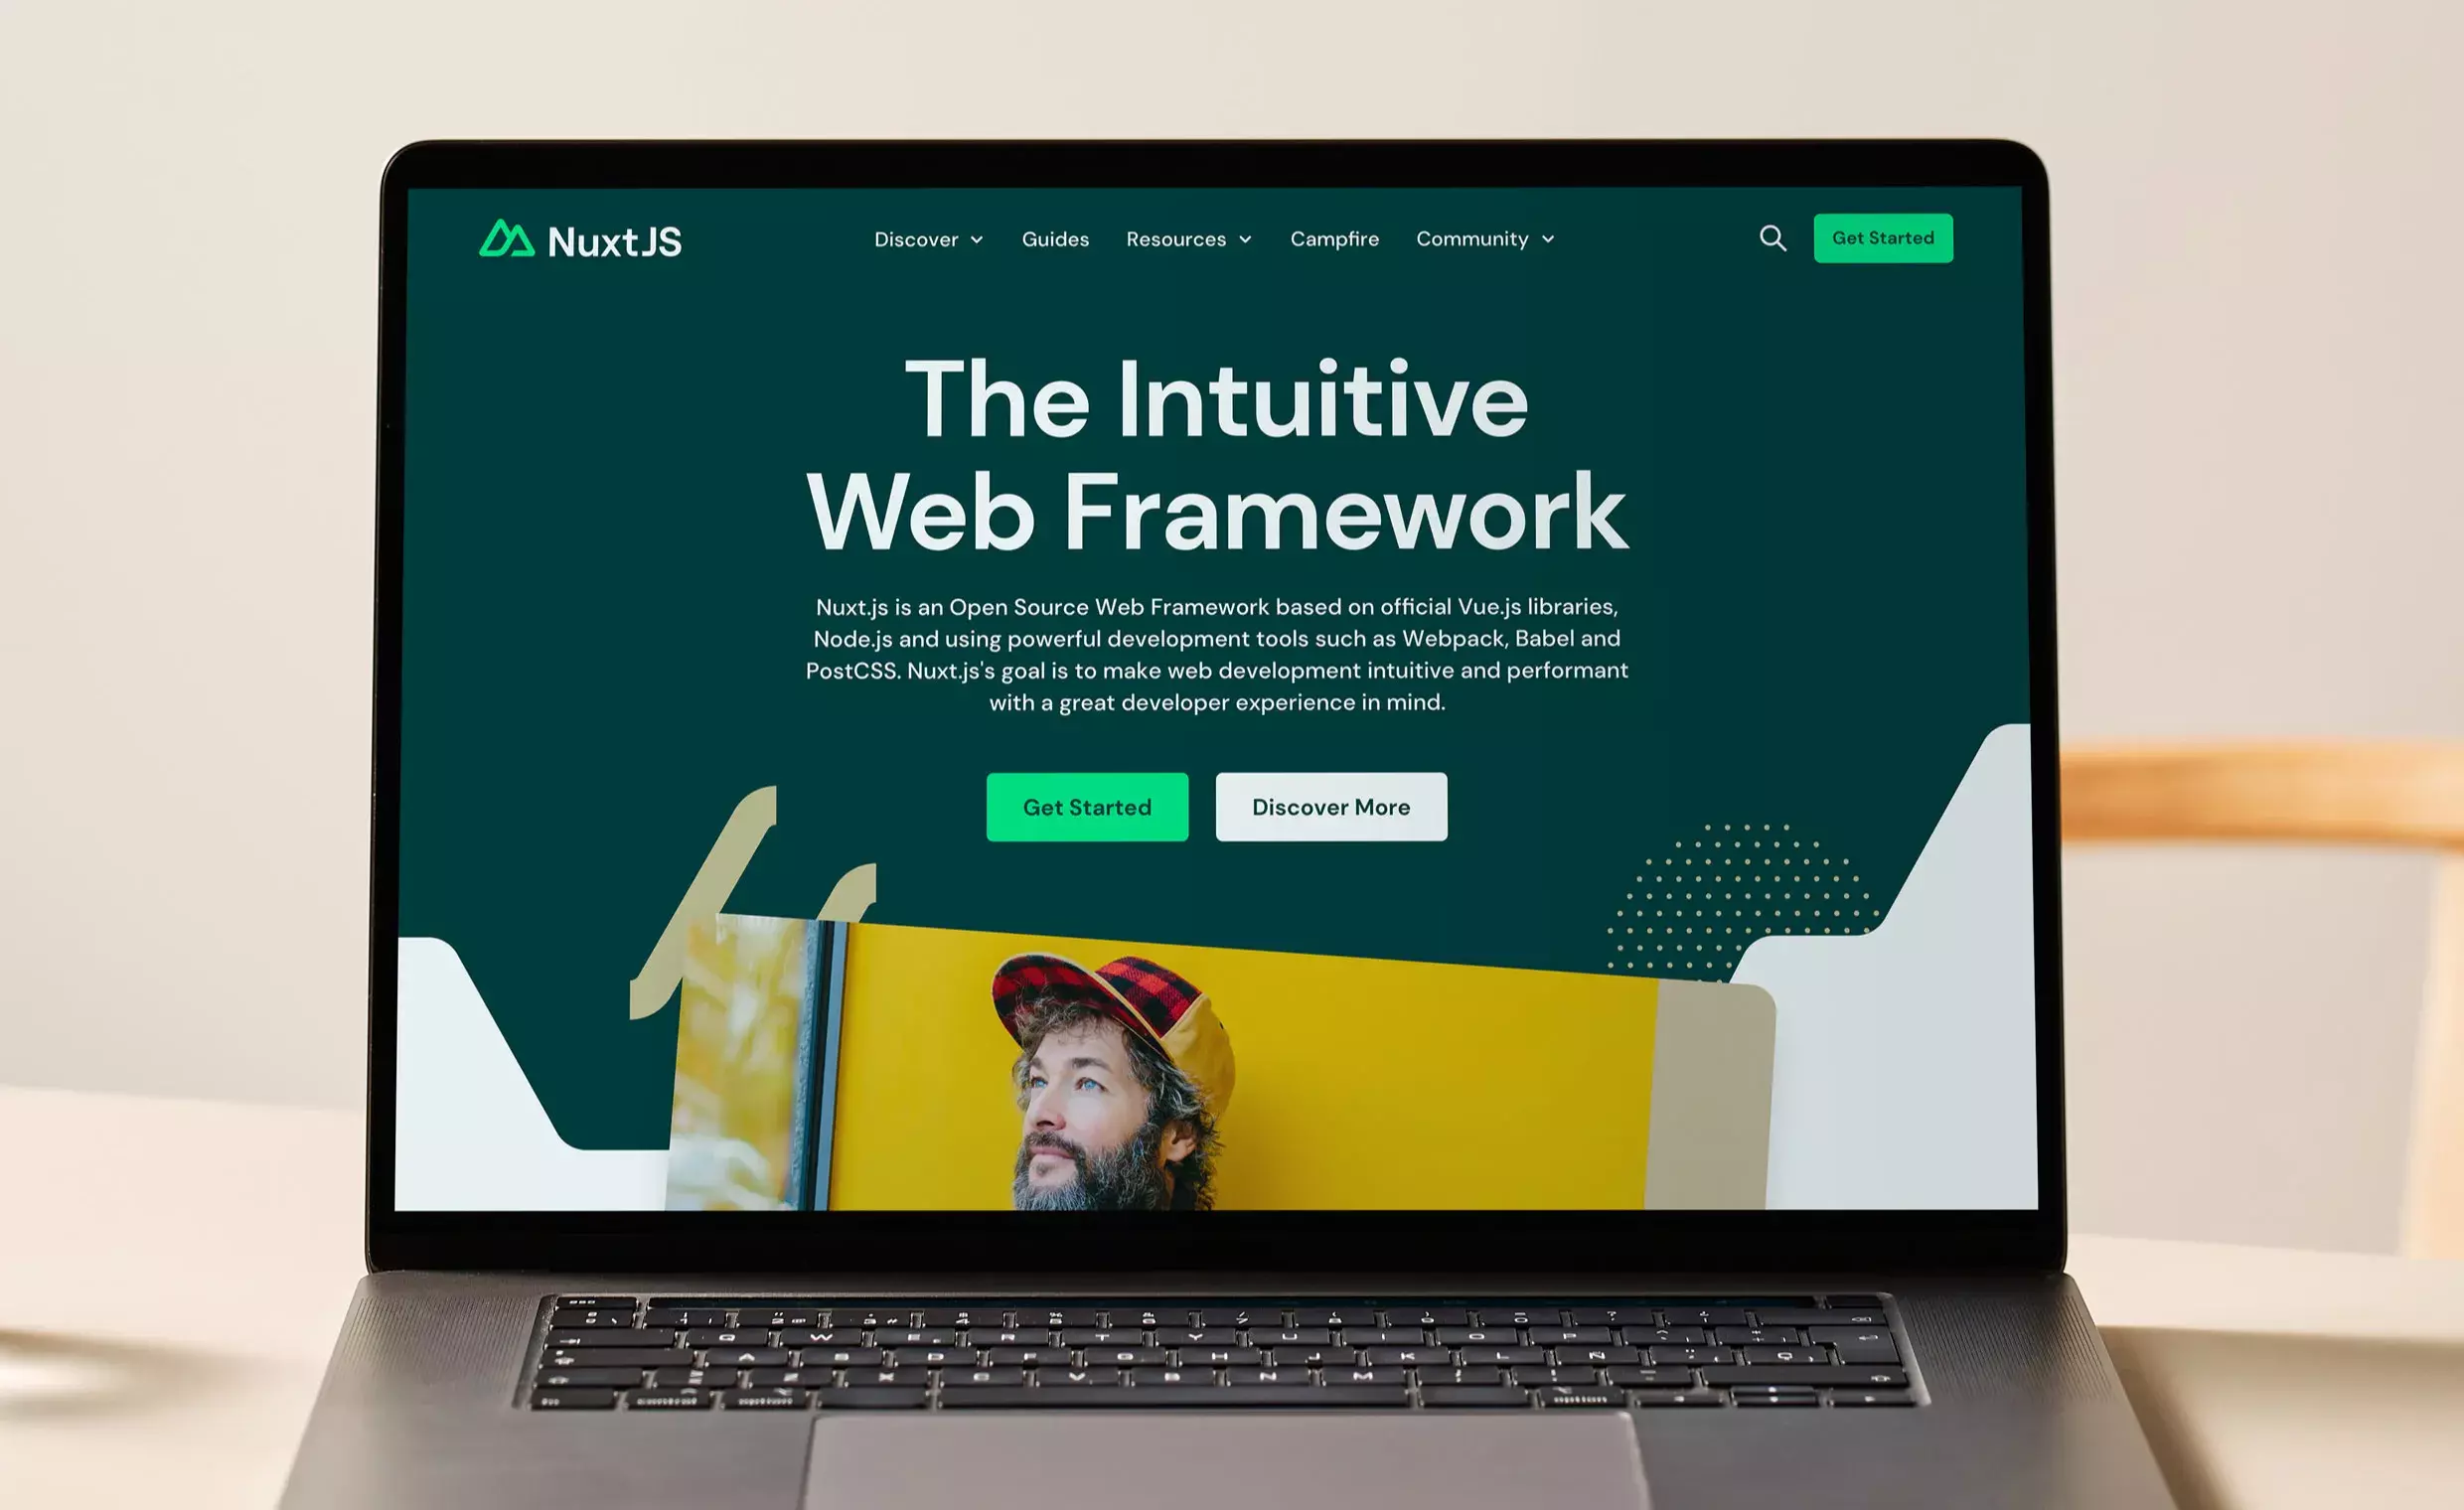 NuxtJS website on a laptop screen